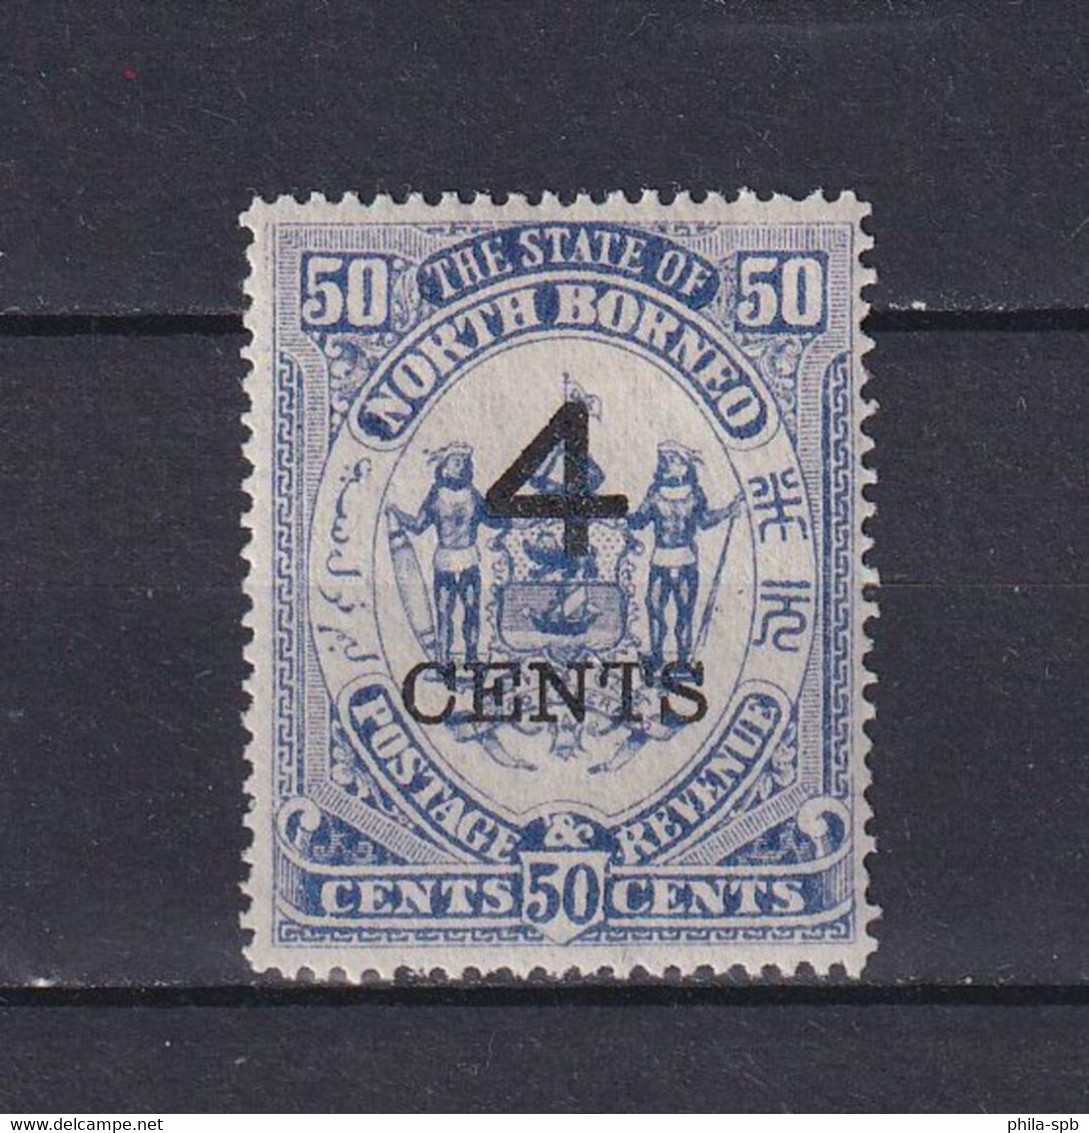 NORTH BORNEO 1901, SG# 119a, CV £29, Part Set, Emblem, MH - North Borneo (...-1963)